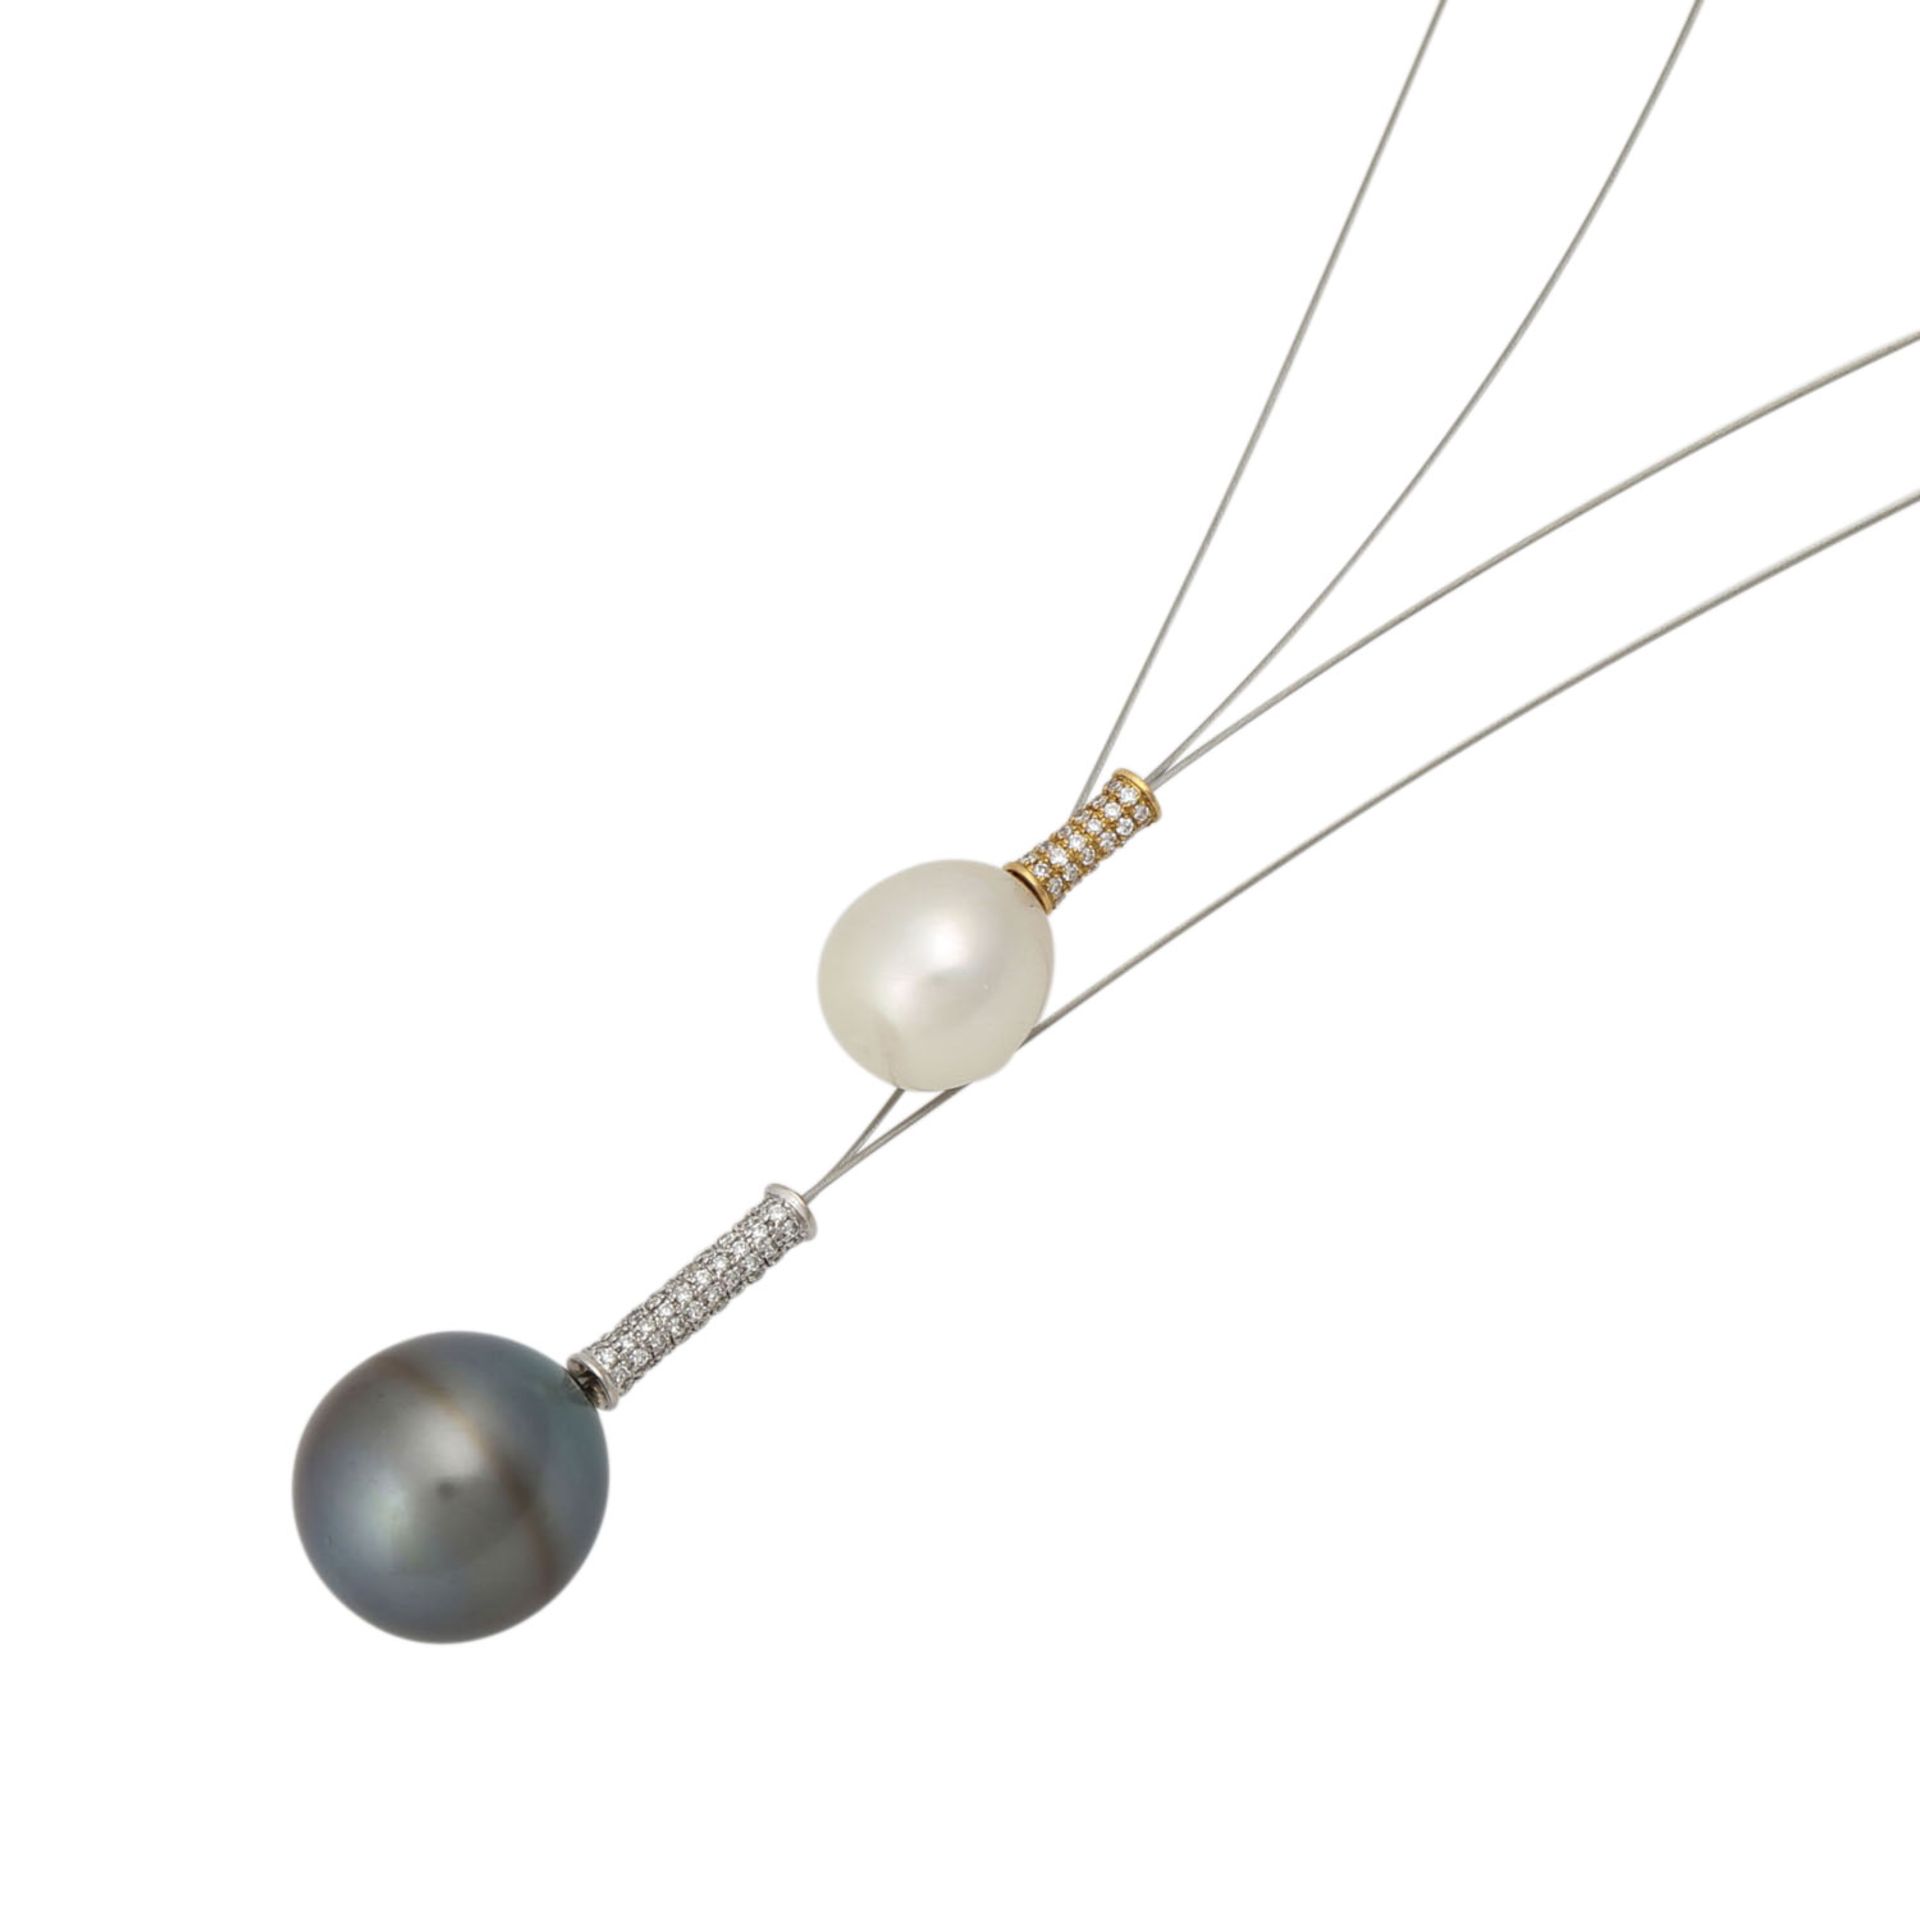 2 lange dünne Stahlketten mit großen Perlen, - Bild 4 aus 4